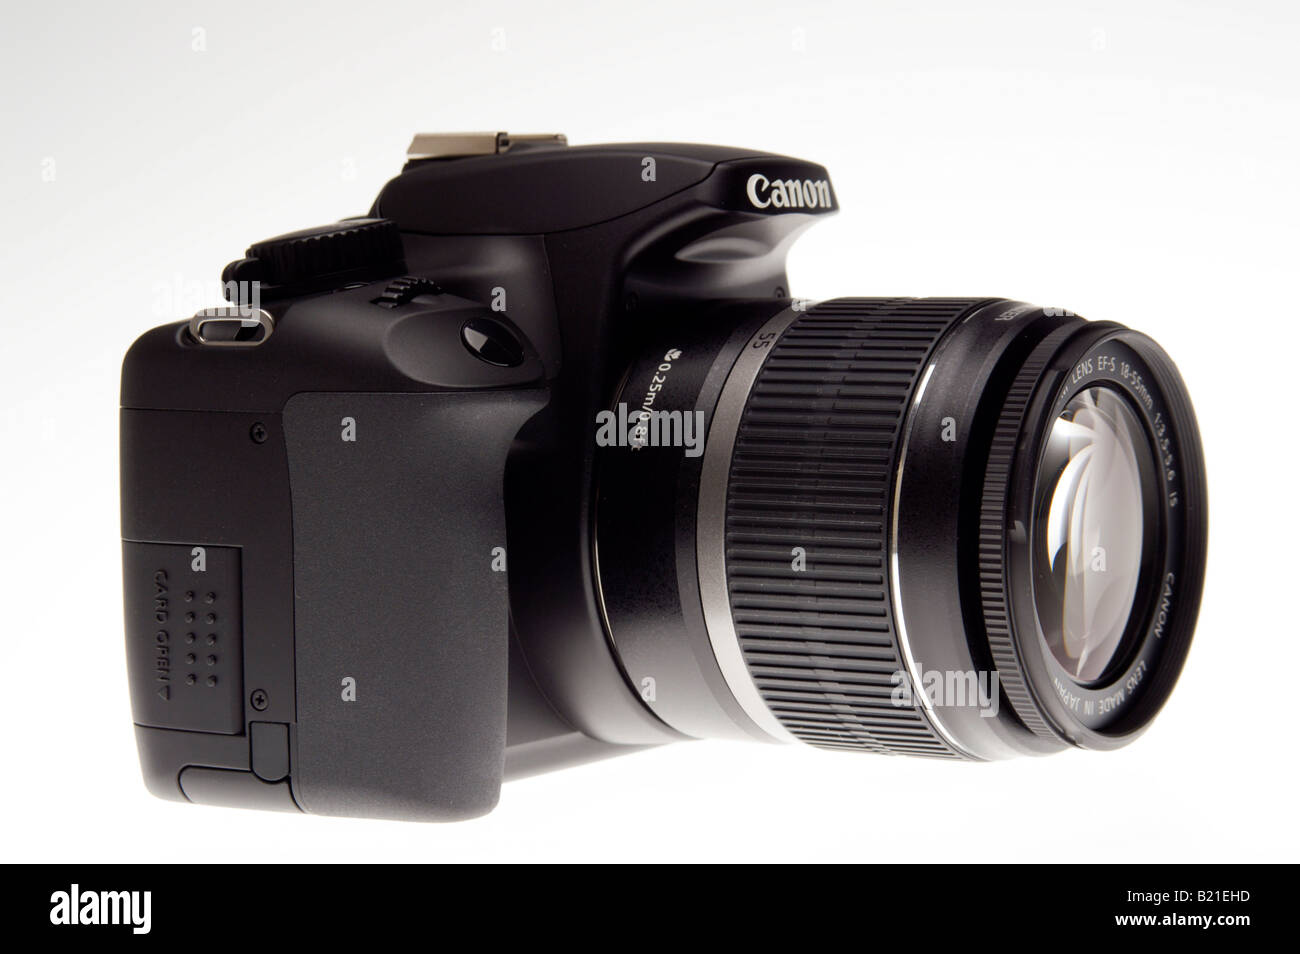 Canon EOS 1000D appareil photo reflex numérique Juillet 2008 Lancement de  produit tourné avec 18-55 mm est libre de stabiliser lens Photo Stock -  Alamy